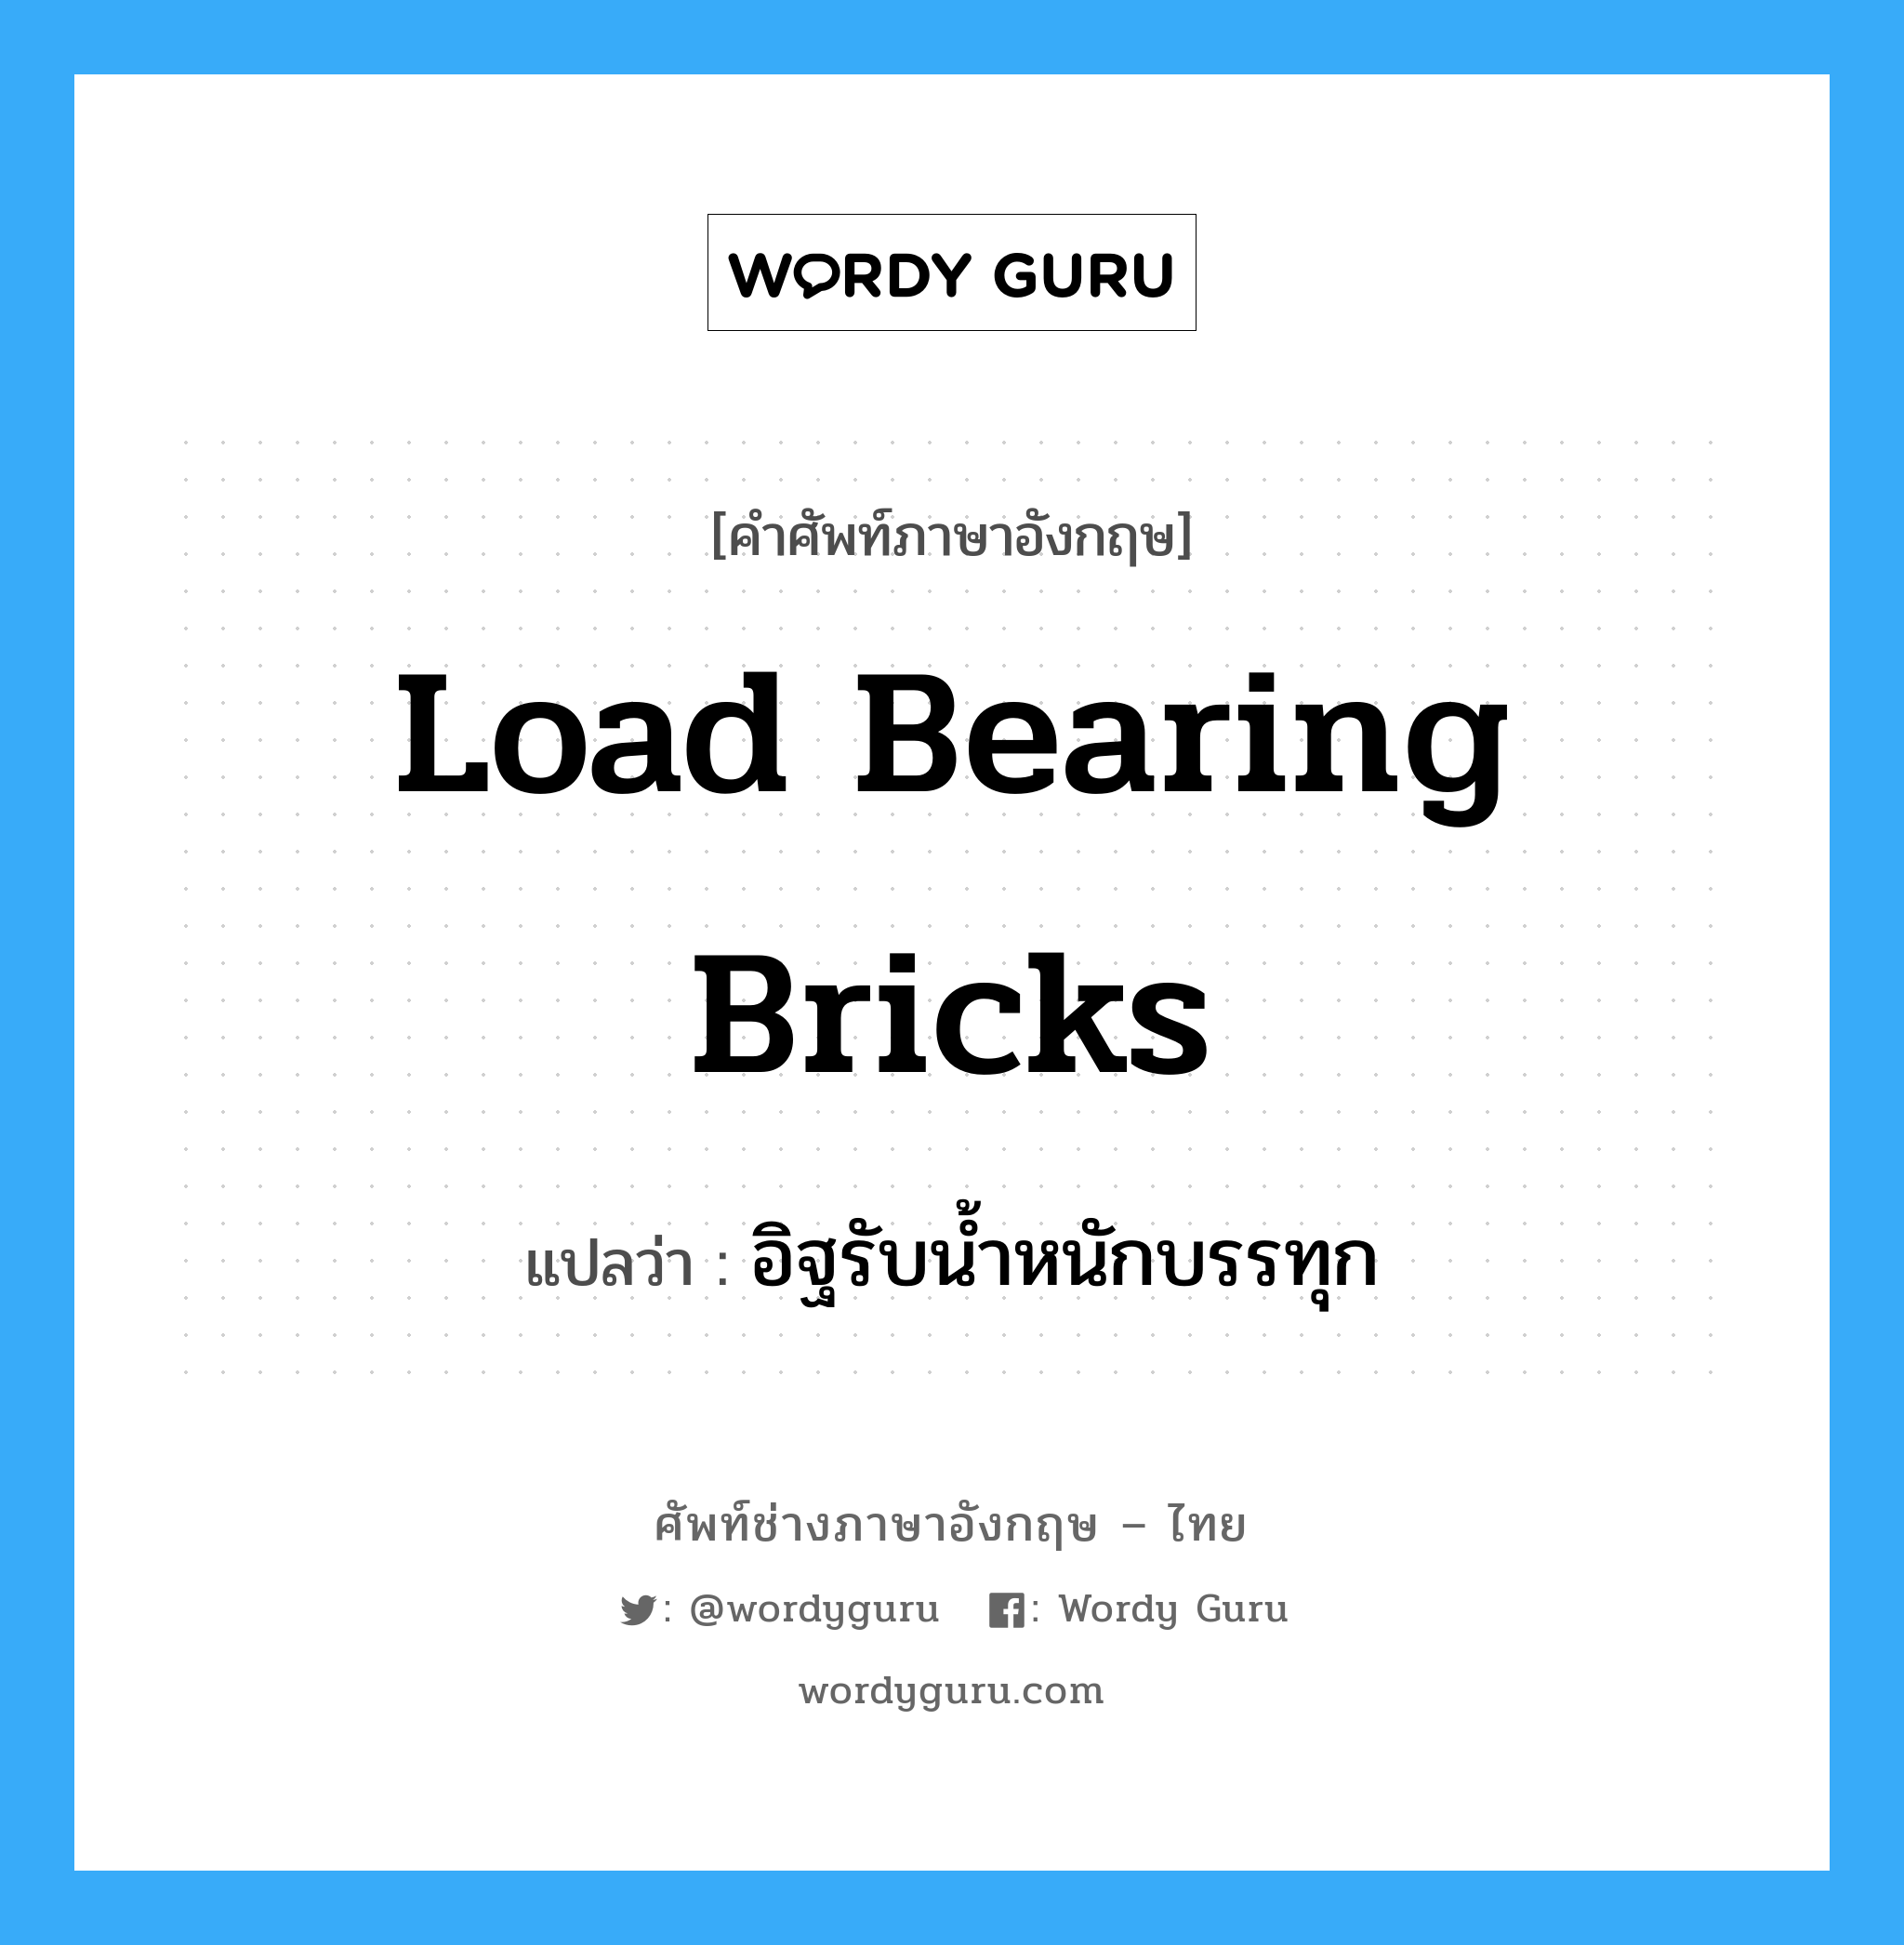 load bearing bricks แปลว่า?, คำศัพท์ช่างภาษาอังกฤษ - ไทย load bearing bricks คำศัพท์ภาษาอังกฤษ load bearing bricks แปลว่า อิฐรับน้ำหนักบรรทุก